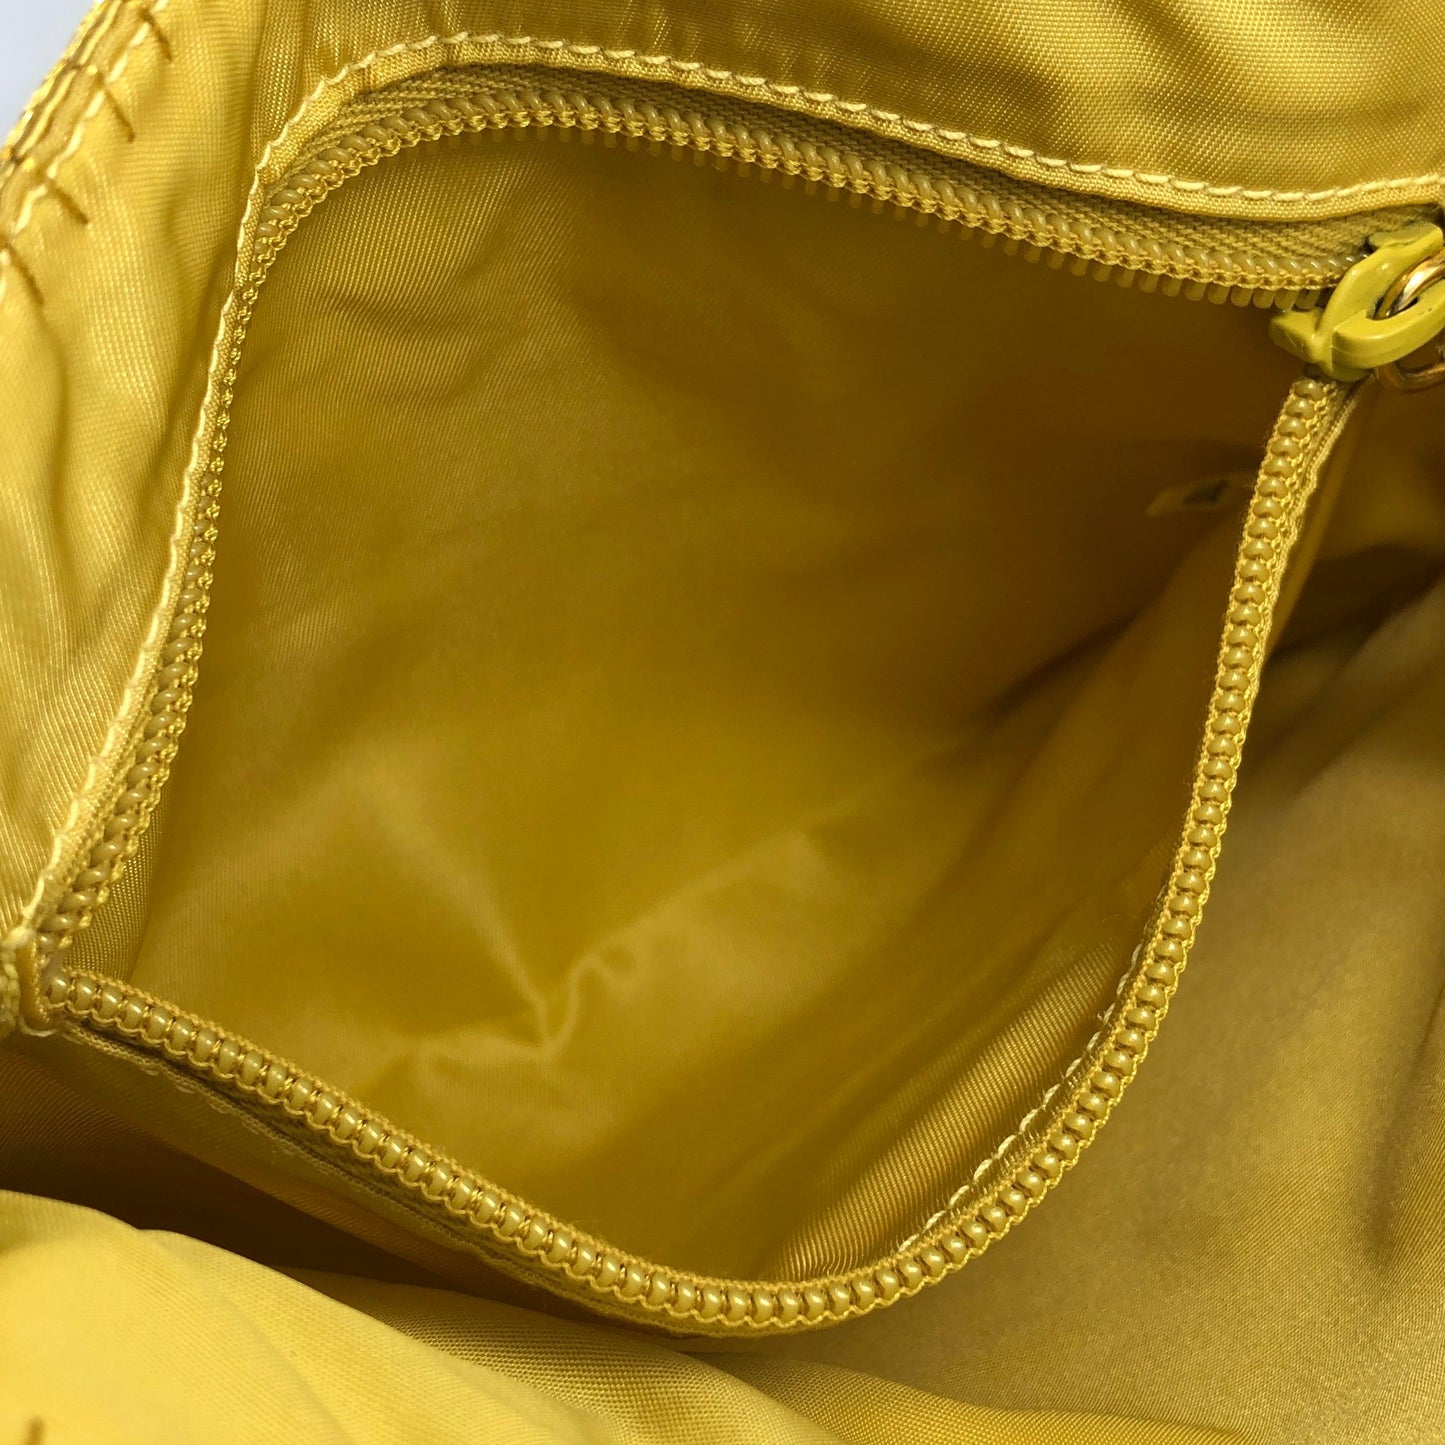 PRADA Logo Satin Tote bag Handbag Yellow Vintage p7ywbw